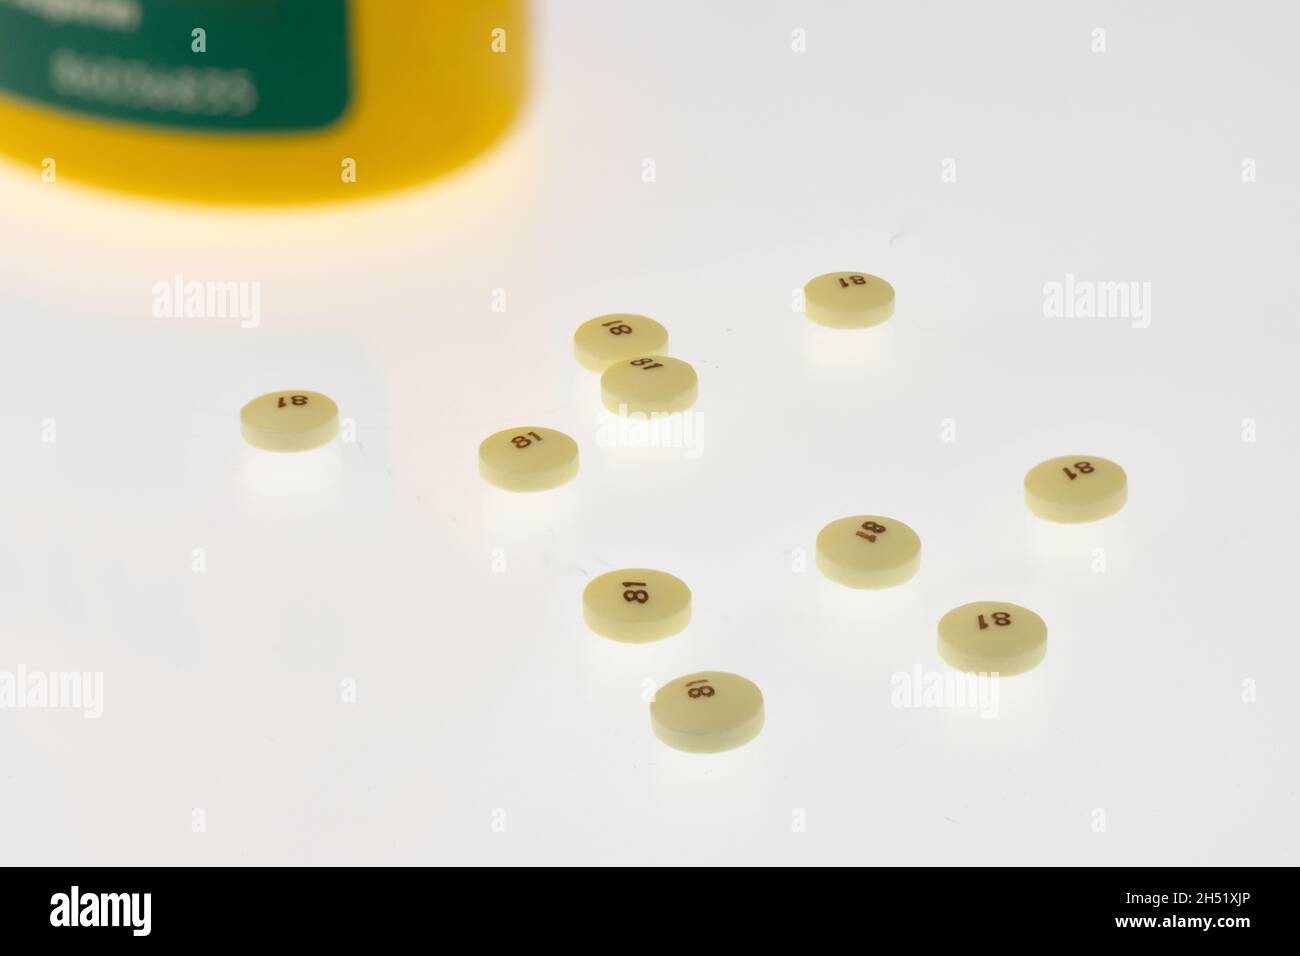 Gestreute niedrige Dosis 81 Milligramm Aspirin auf weißem Hintergrund mit einer gelben und grünen Flasche im Hintergrund, häufig als Präventivmedizin für verwendet Stockfoto